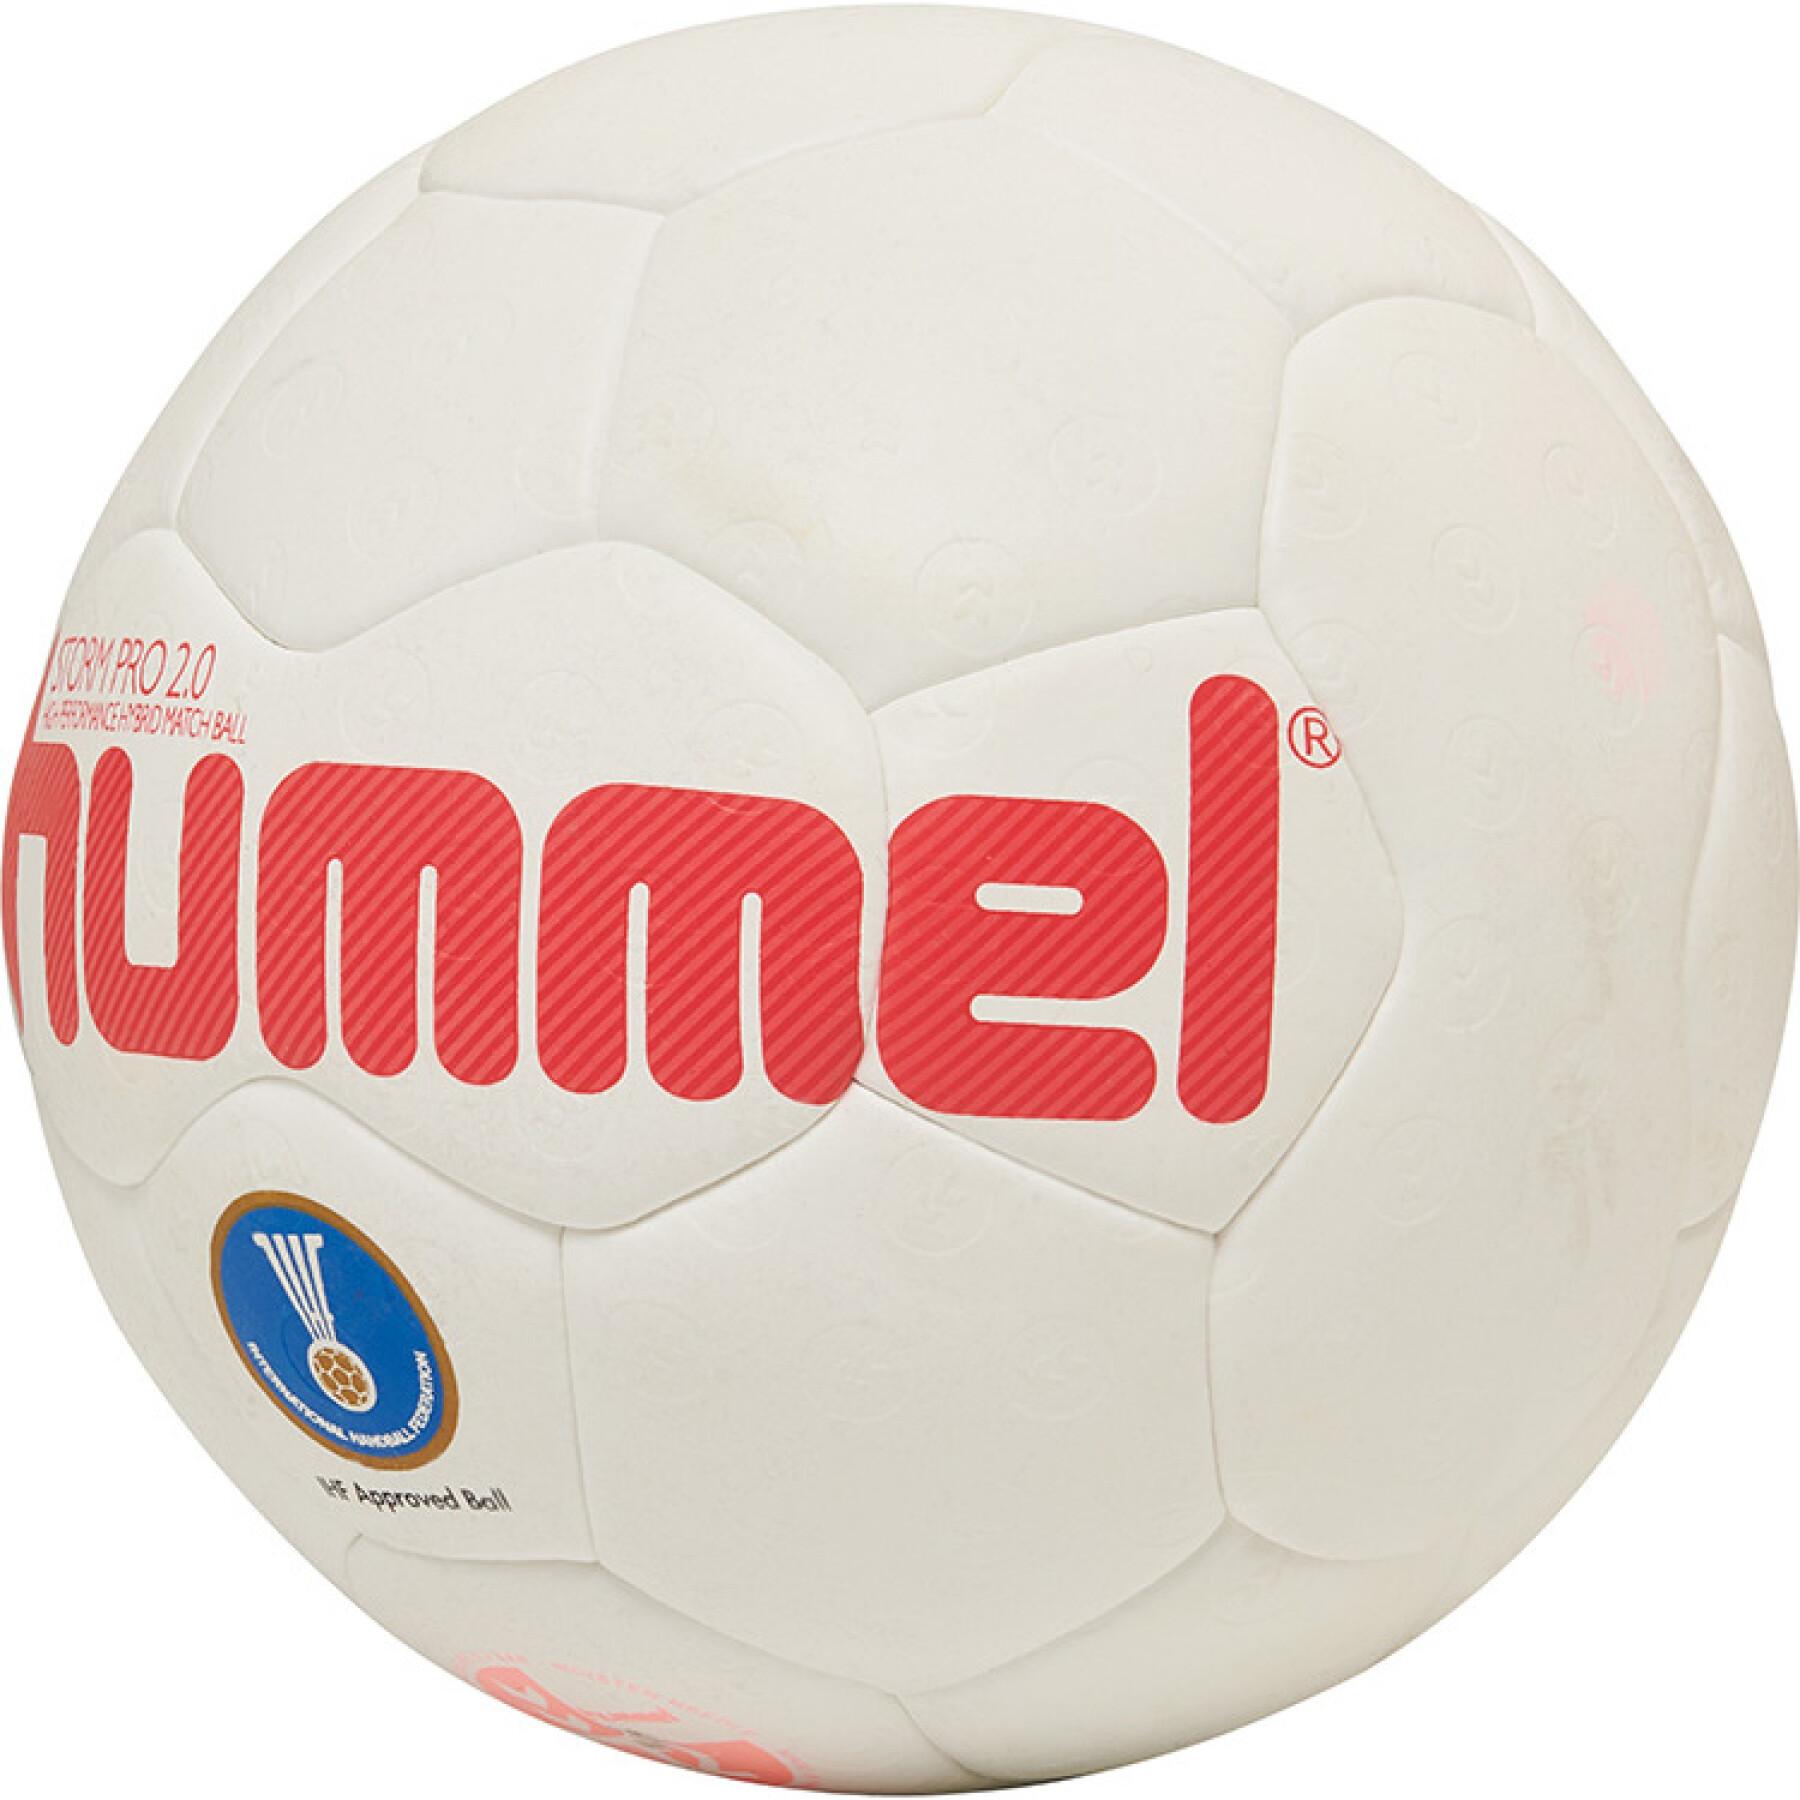 Hummel Handball Storm Pro 2.0 203596 